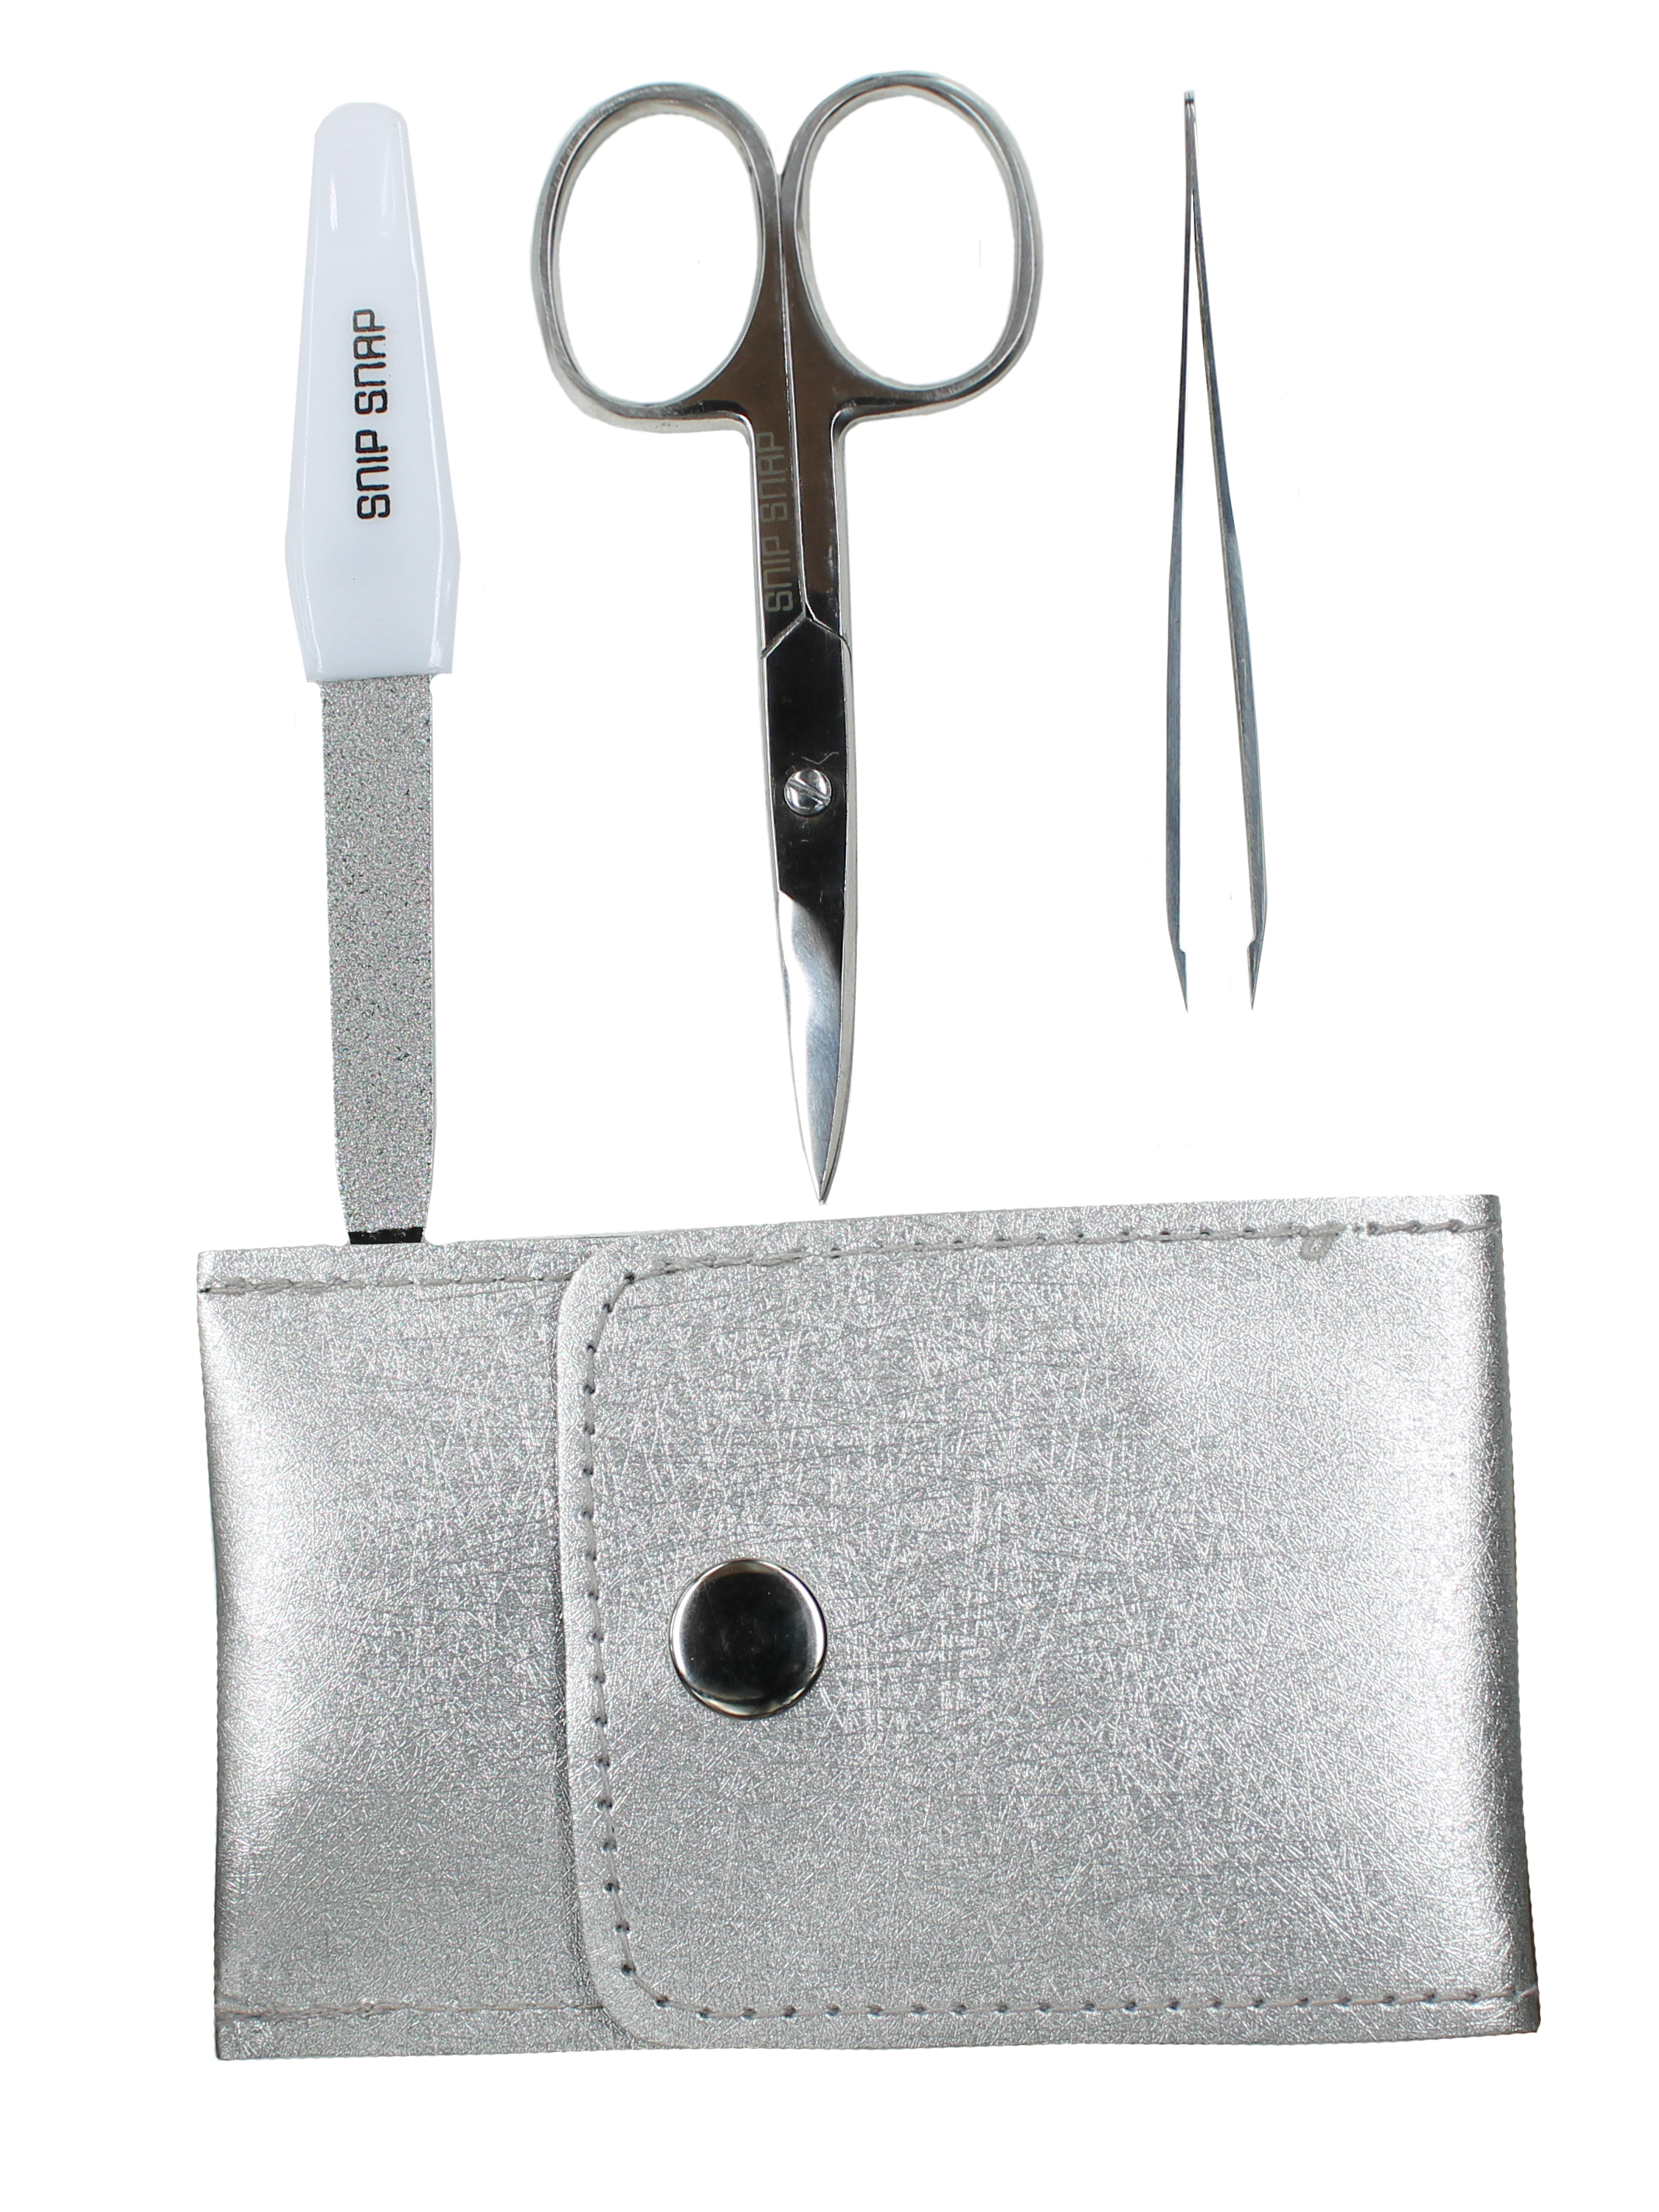 Купить Маникюрный набор Snip snap (ножницы, пилочка и пинцет) в кожаном чехле, серебристый